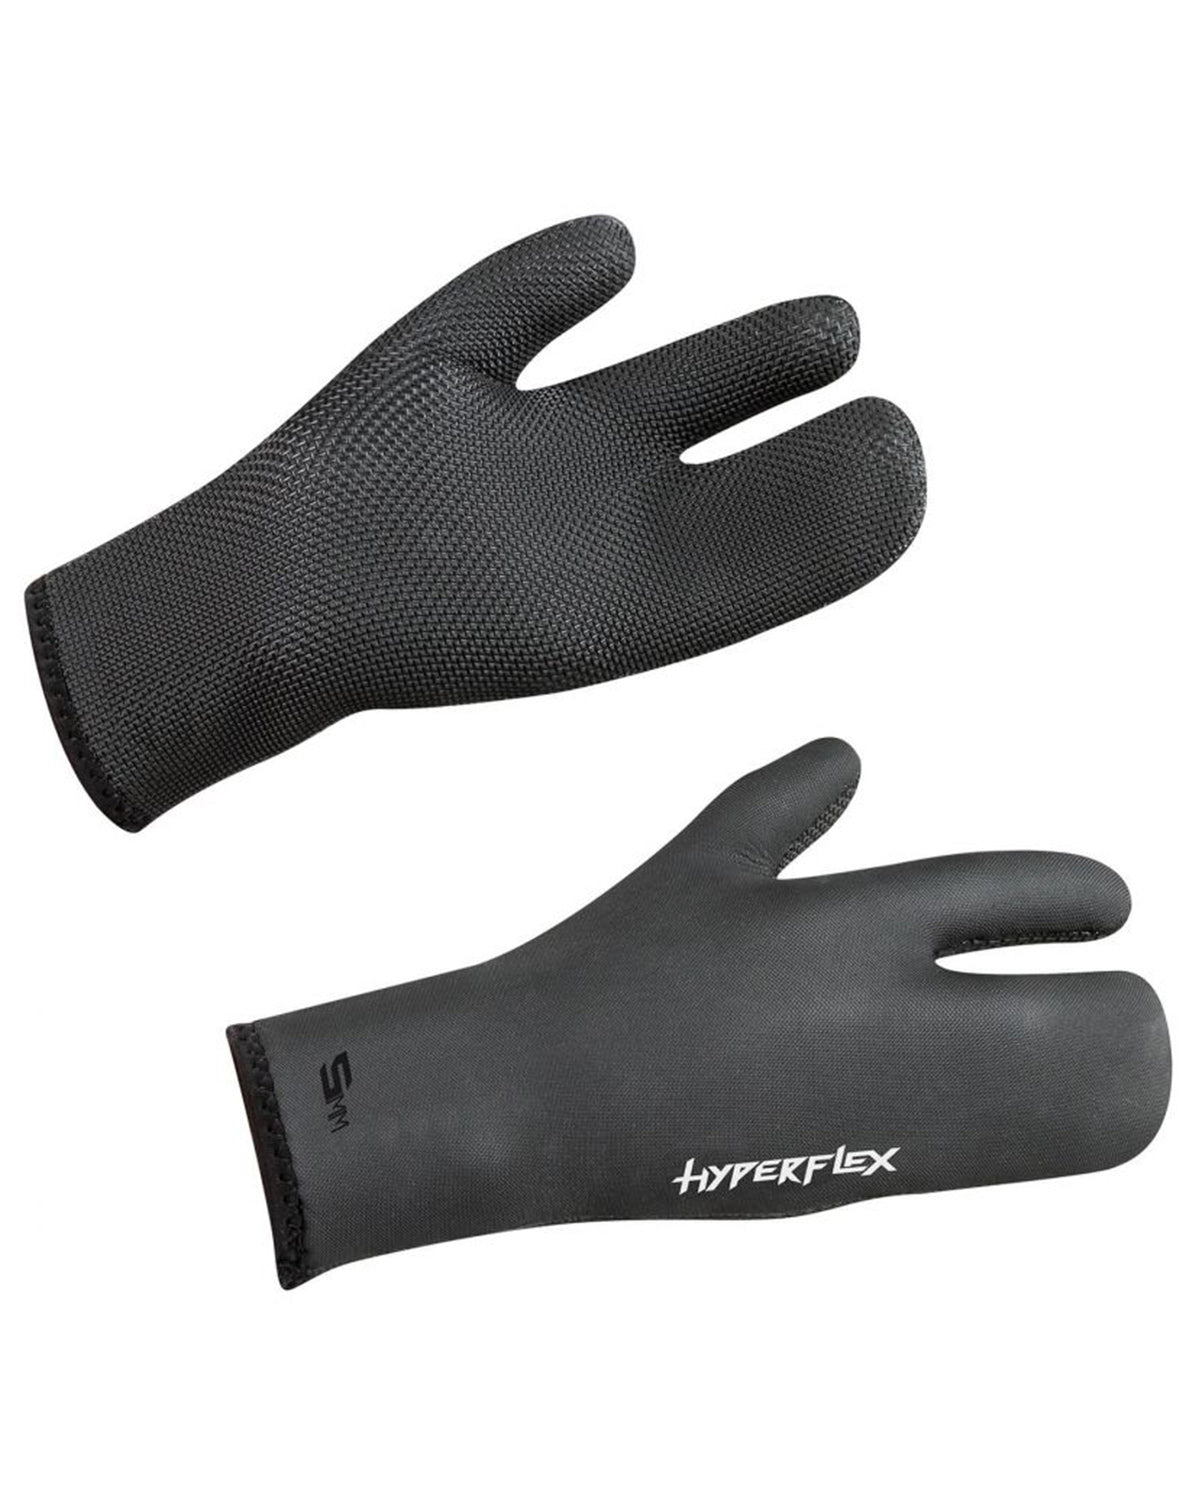 5mm HyperFlex Claw Glove